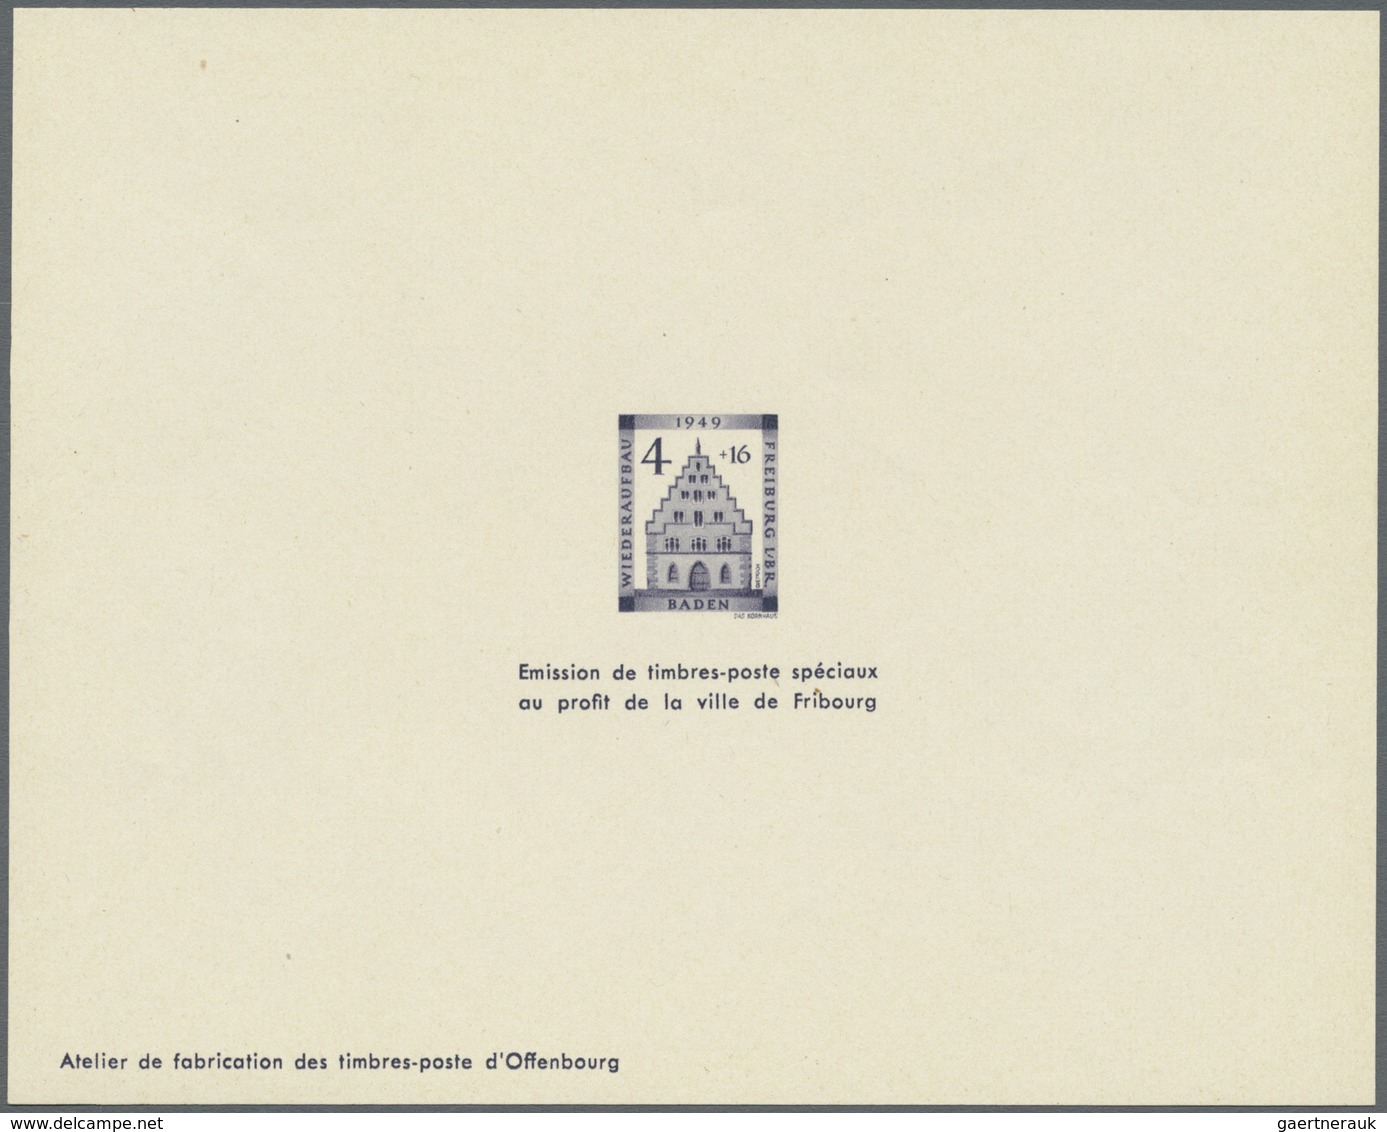 (*) Französische Zone - Baden: 1949, 4 Pfg. bis 30 Pfg. Wiederaufbau als Ministerblock auf Kartonpapier